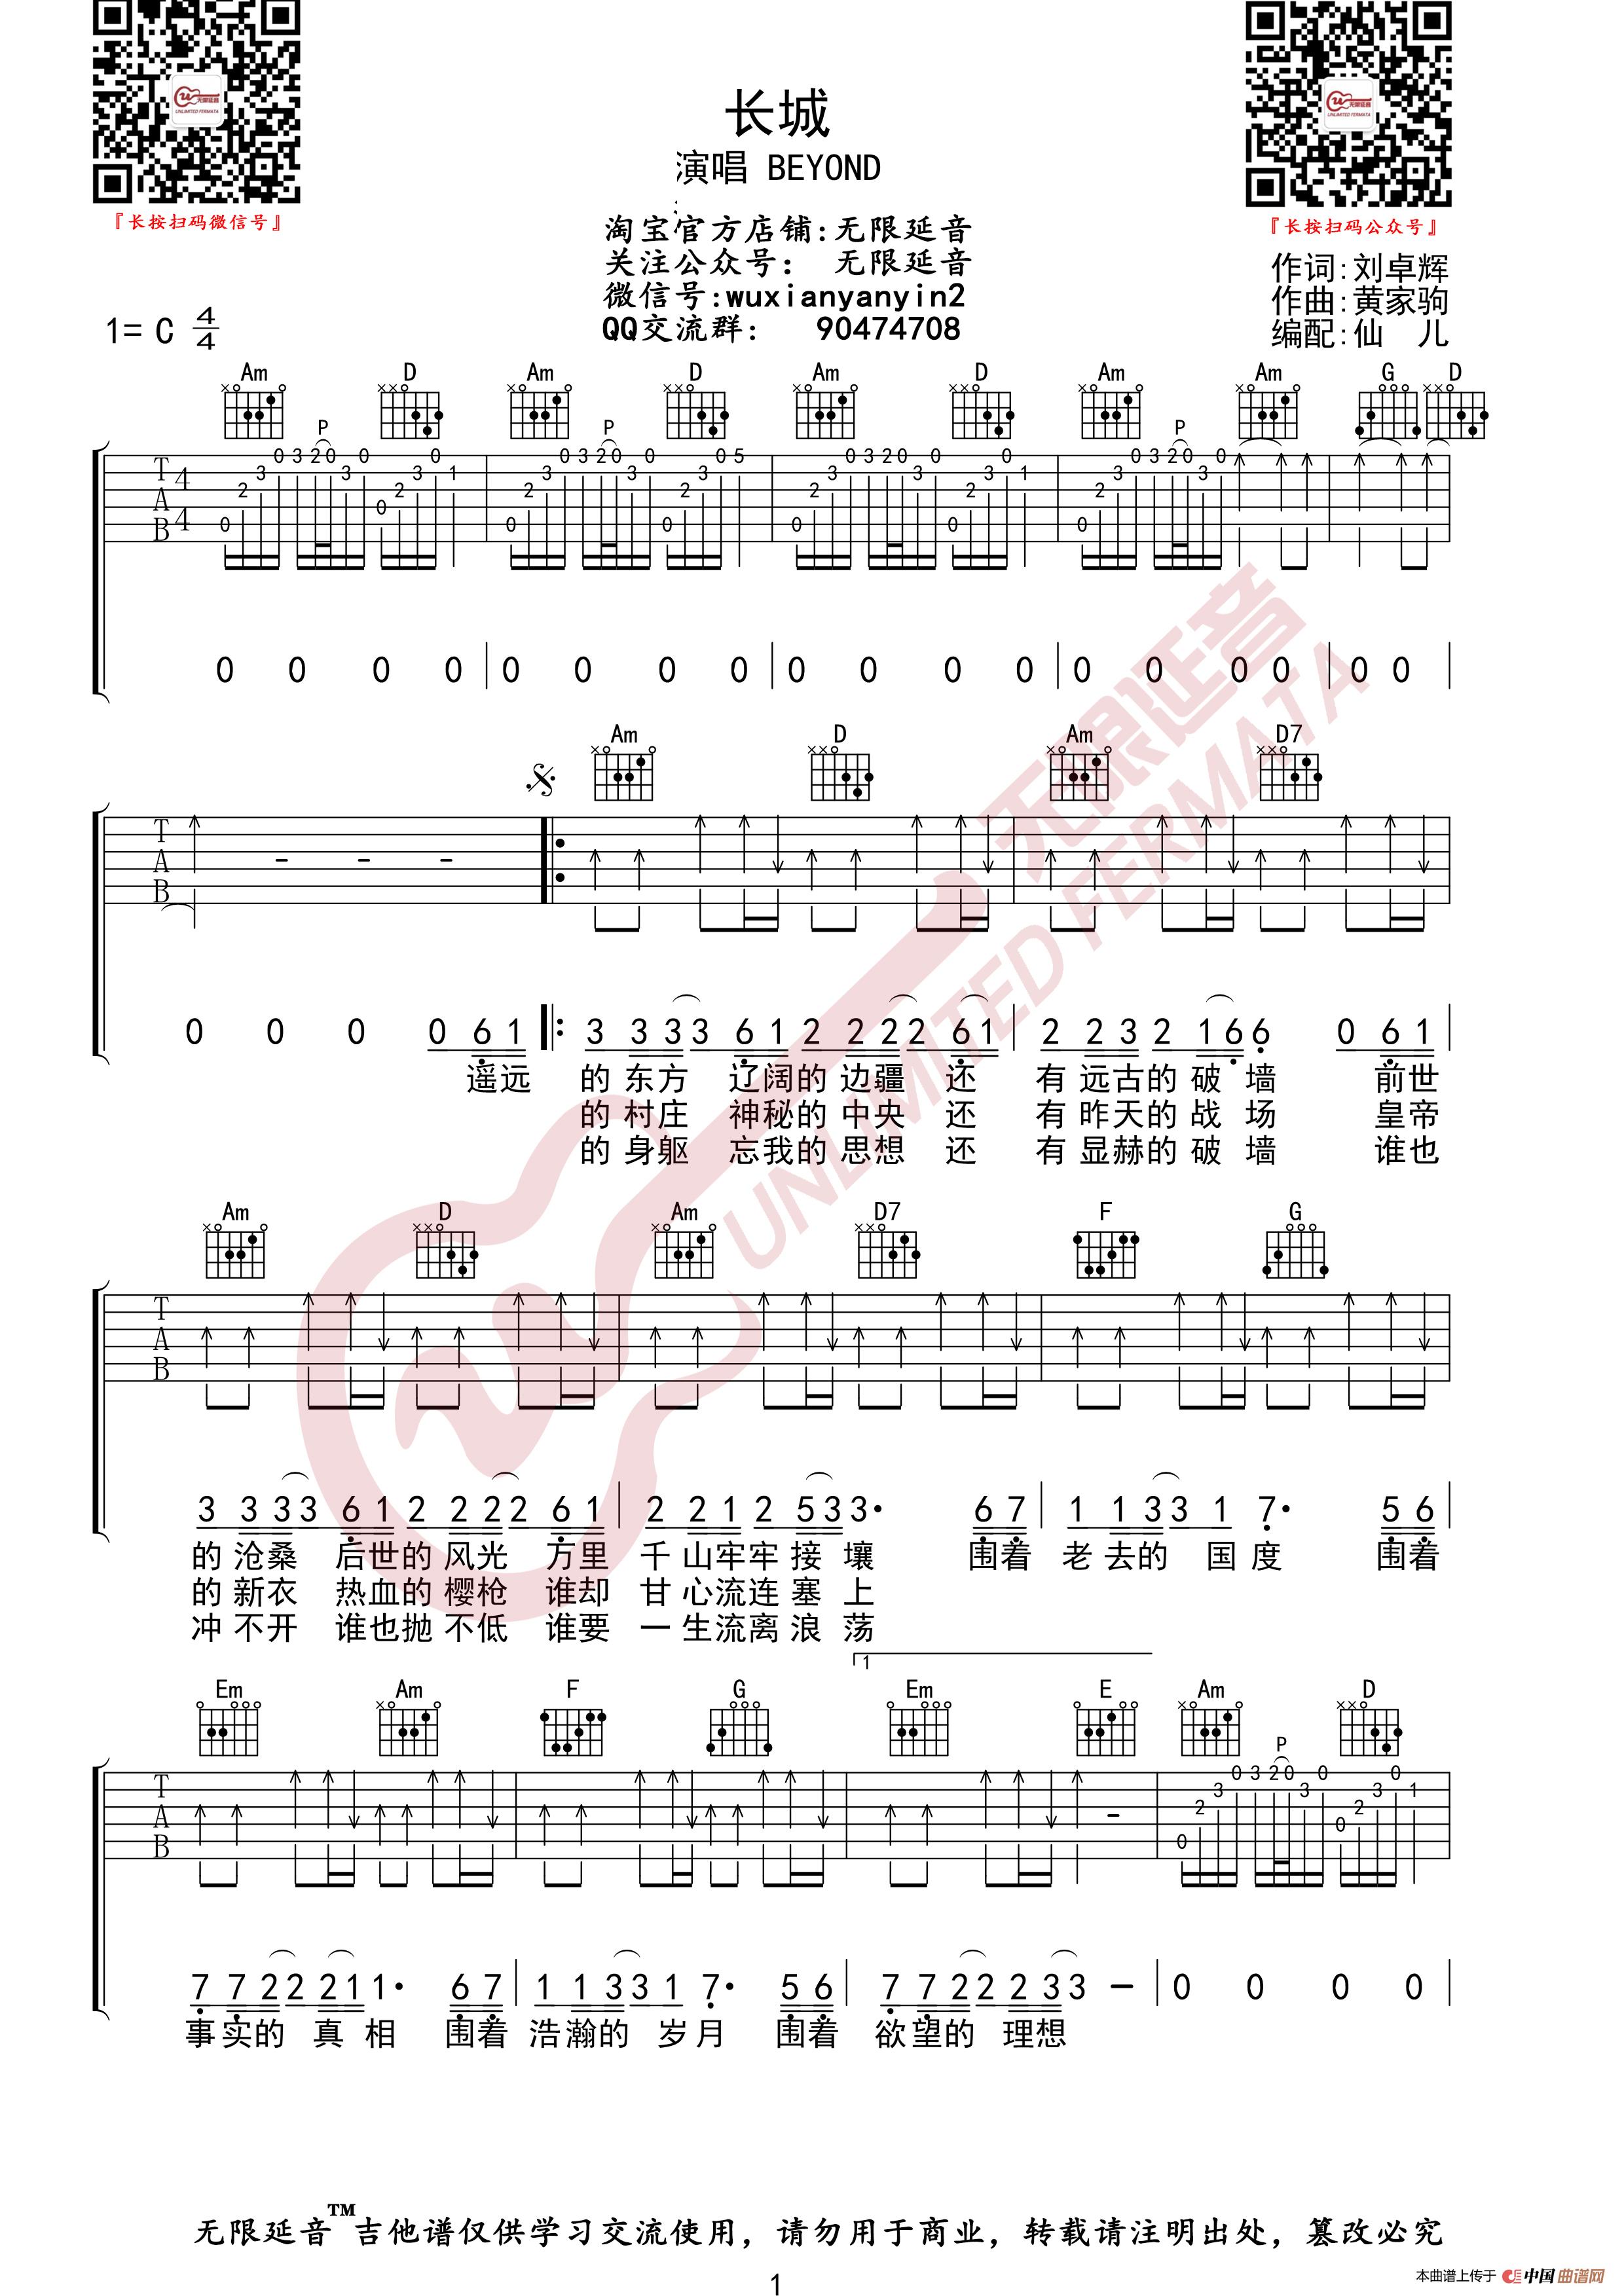 长城(1993)吉他谱 Beyond-彼岸吉他 - 一站式吉他爱好者服务平台